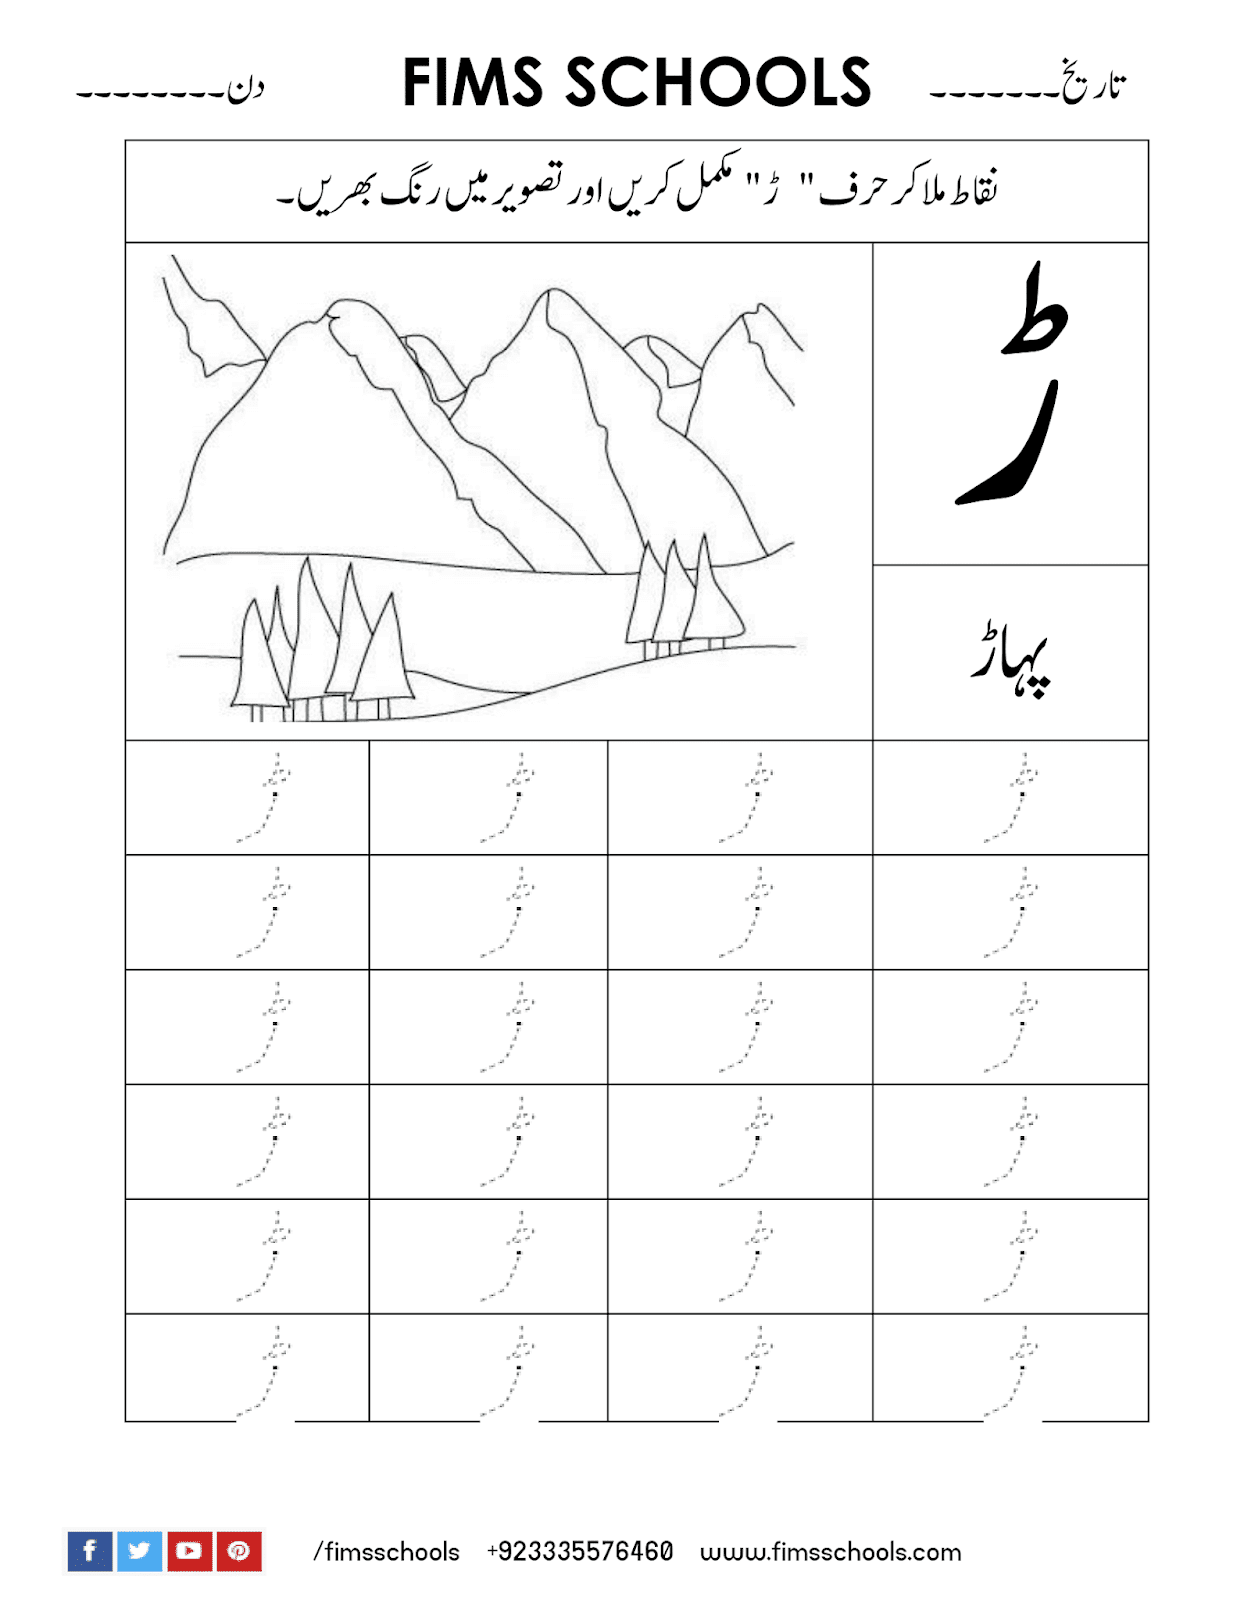 Ray (ڑ) Urdu Tracing Worksheet - Free Printable And Free